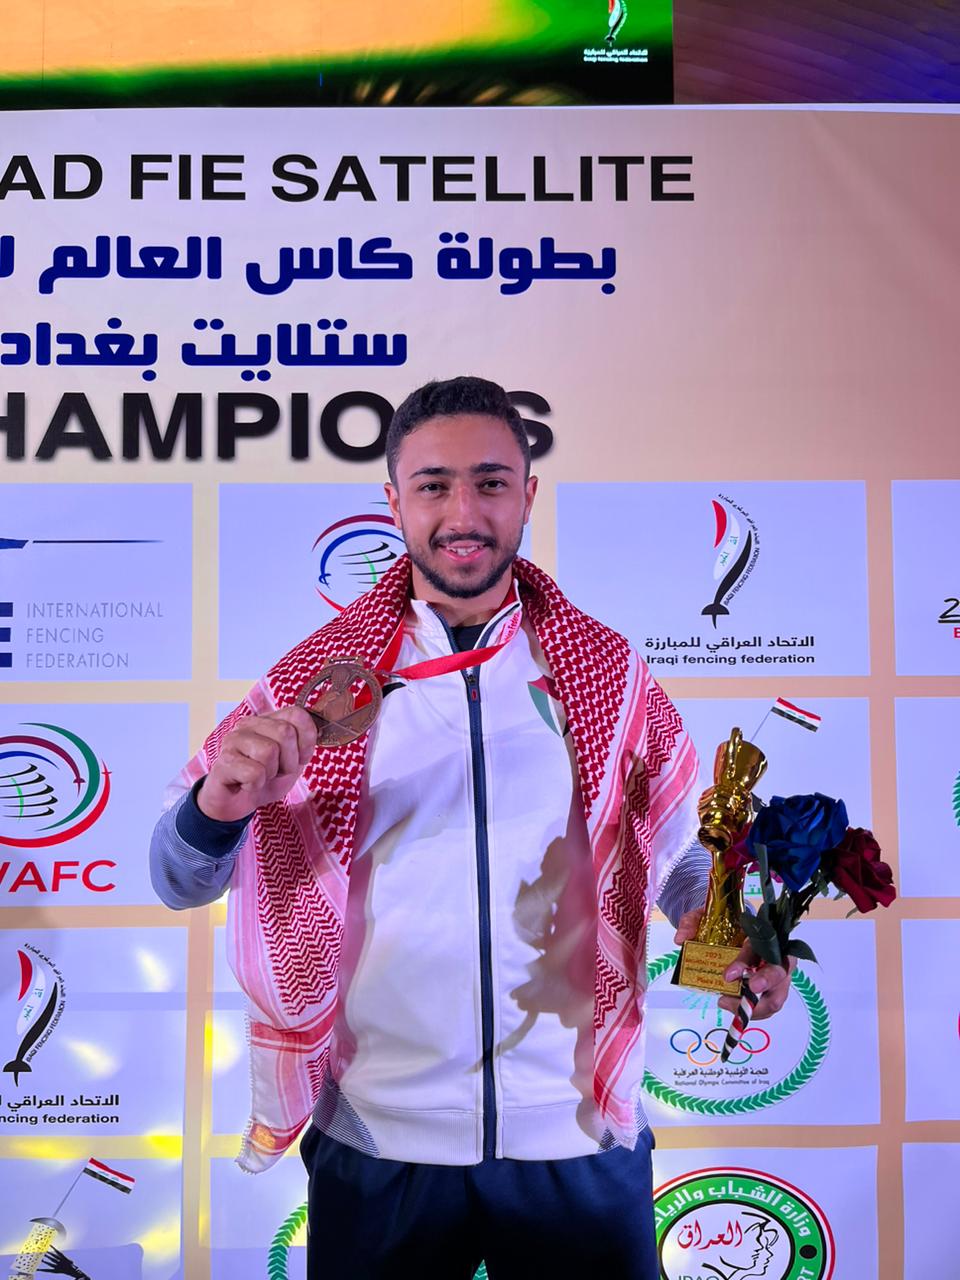 طالب جامعة عمان الأهلية أسامة المصري يتألق في بطولة كأس العالم للمبارزة